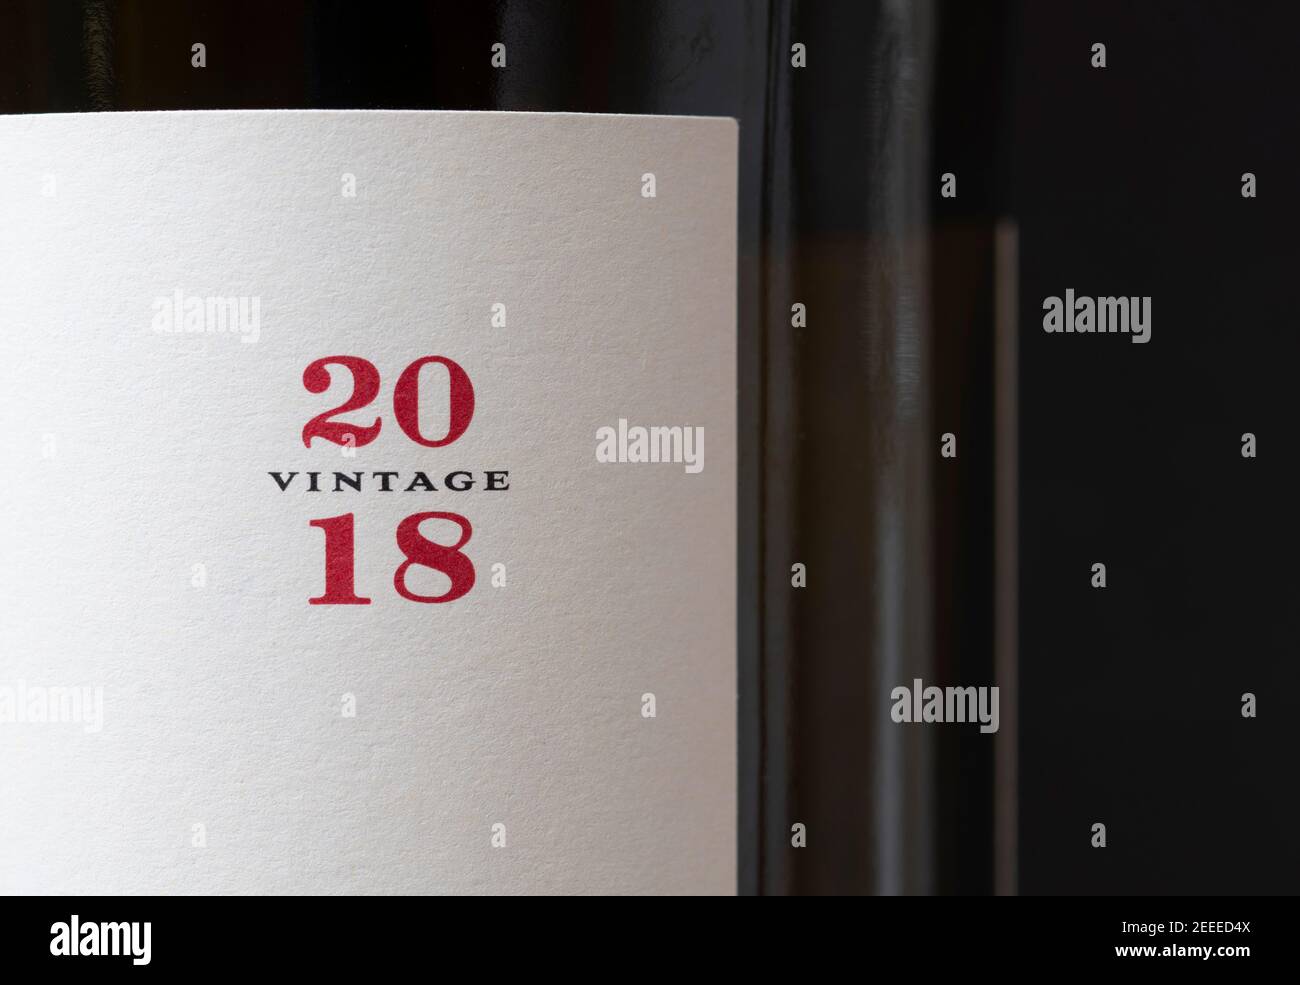 Era Costana Rioja étiquette de bouteille de vin en gros plan Banque D'Images